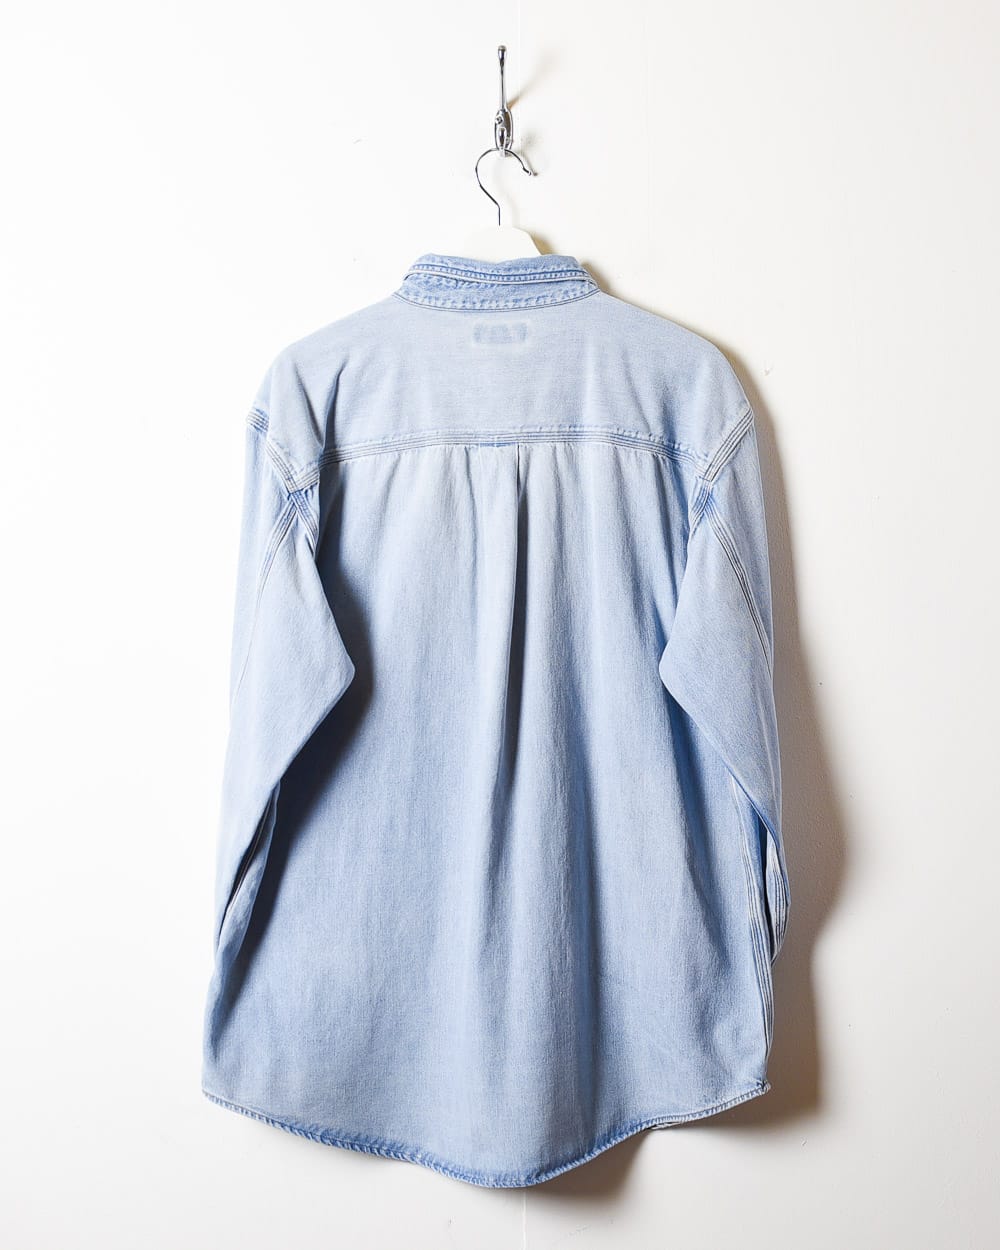 BabyBlue Carhartt Denim Shirt - Large